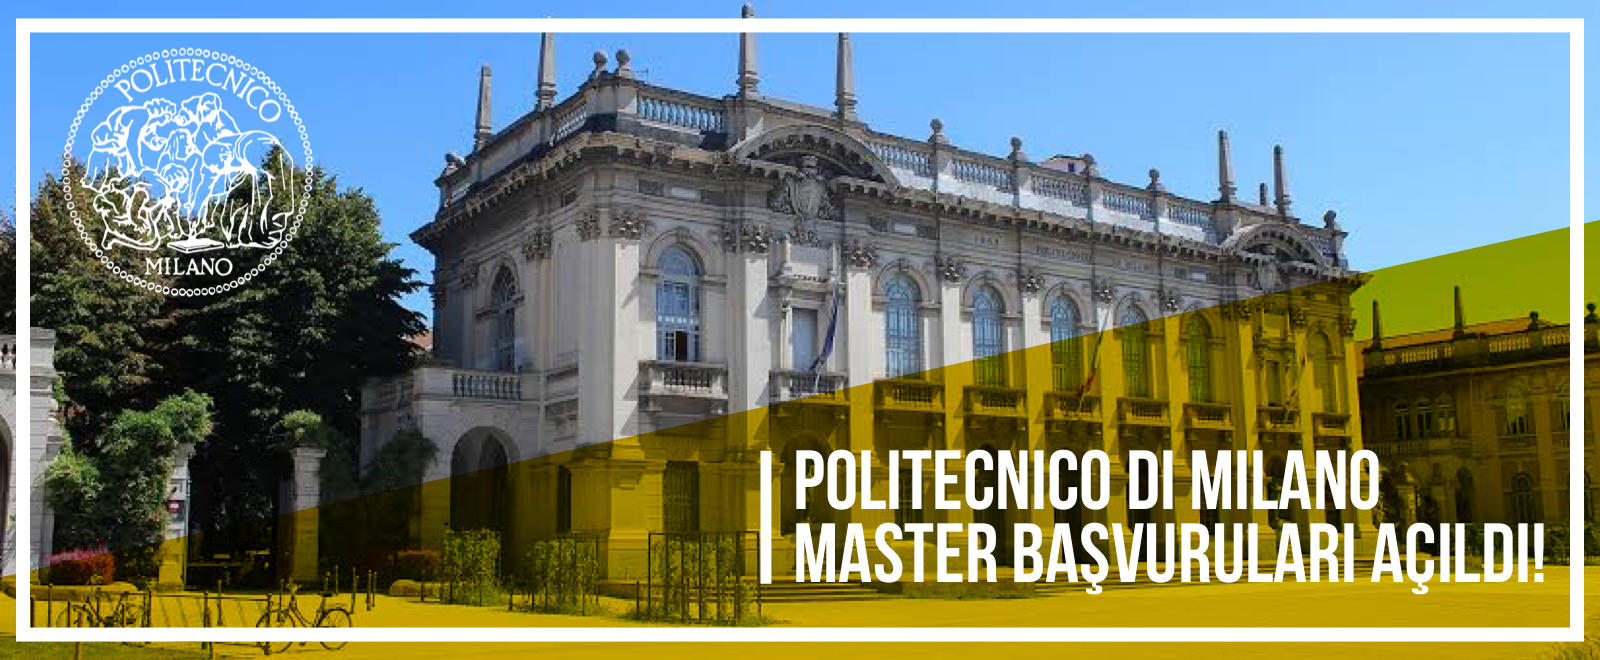 Politecnico di Milano master başvuruları açıldı.